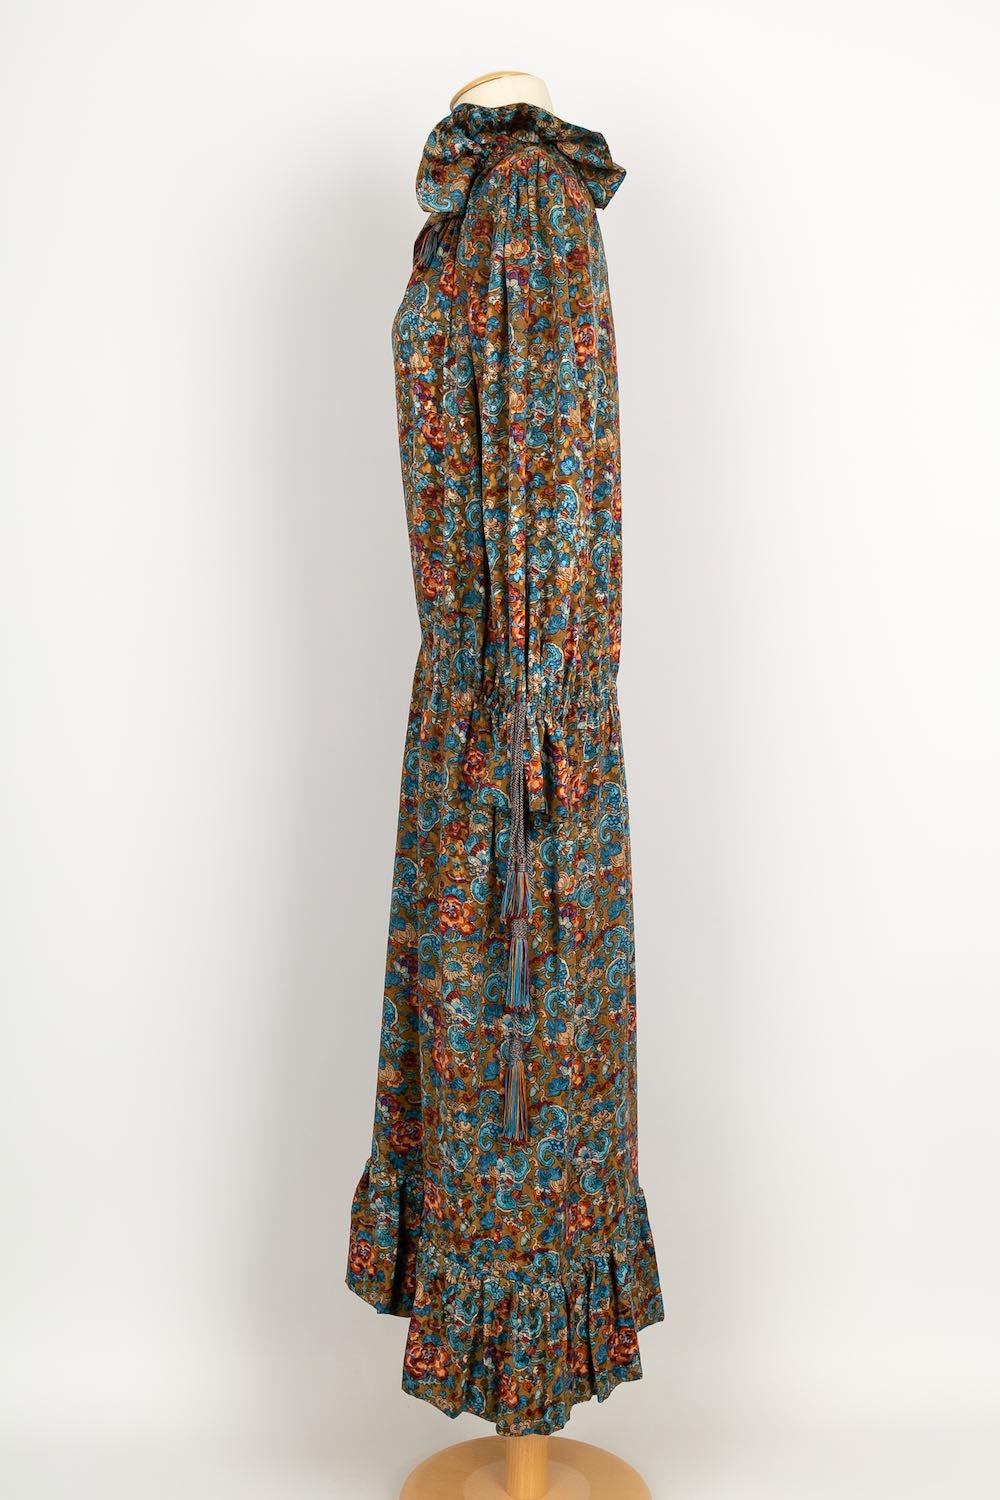 Yves Saint Laurent - (Made in France) Langes Haute Couture Kleid aus Seide. Kein Label, es passt ein 38FR.

Zusätzliche Informationen:
Zustand: Sehr guter Zustand
Abmessungen: Schulterbreite: 42 cm - Brustumfang: 52 cm - Ärmellänge: 64 cm - Länge: